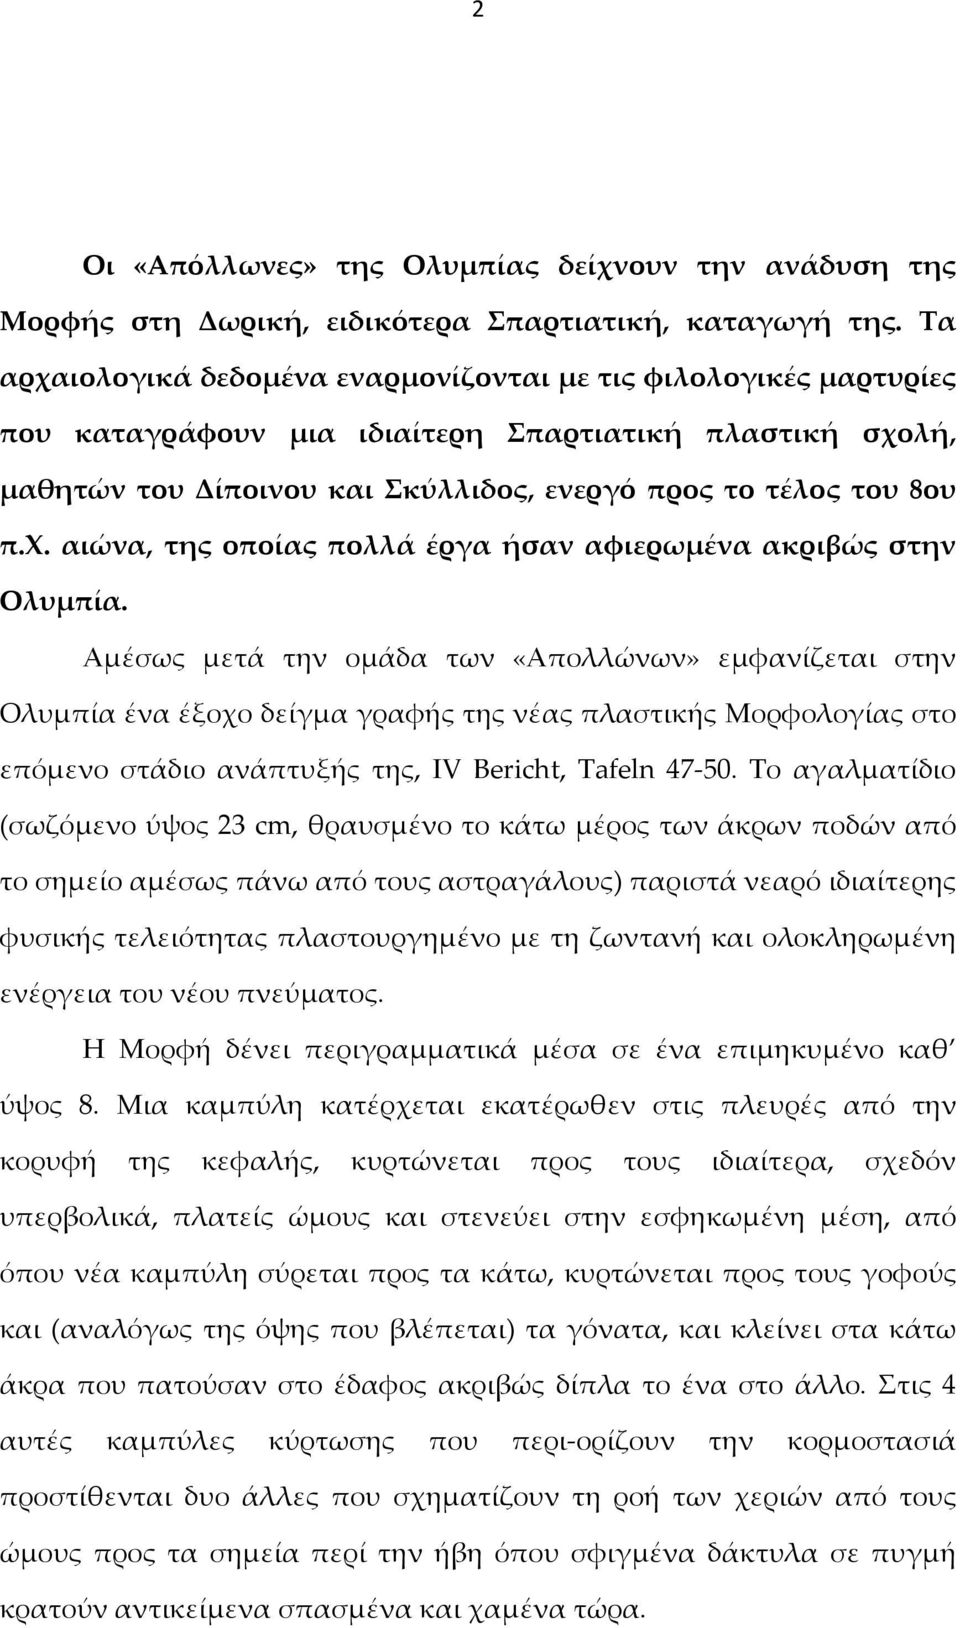 Αμέσως μετά την ομάδα των «Απολλώνων» εμφανίζεται στην Ολυμπία ένα έξοχο δείγμα γραφής της νέας πλαστικής Μορφολογίας στο επόμενο στάδιο ανάπτυξής της, IV Bericht, Tafeln 47-50.